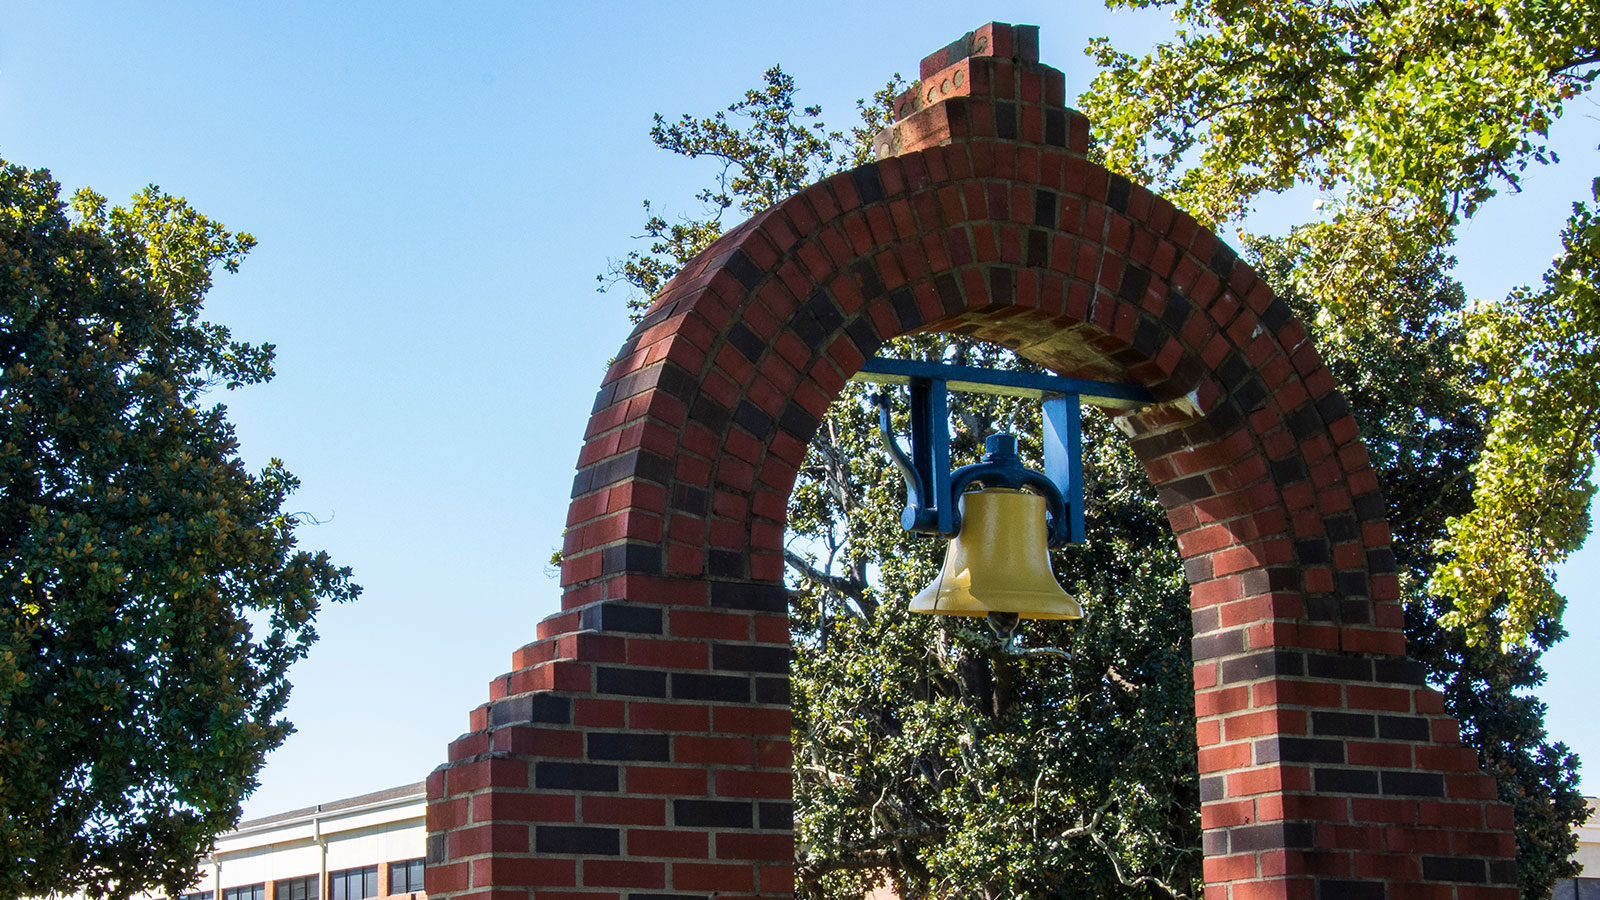 Stillman College- Alonzo Strange Bell